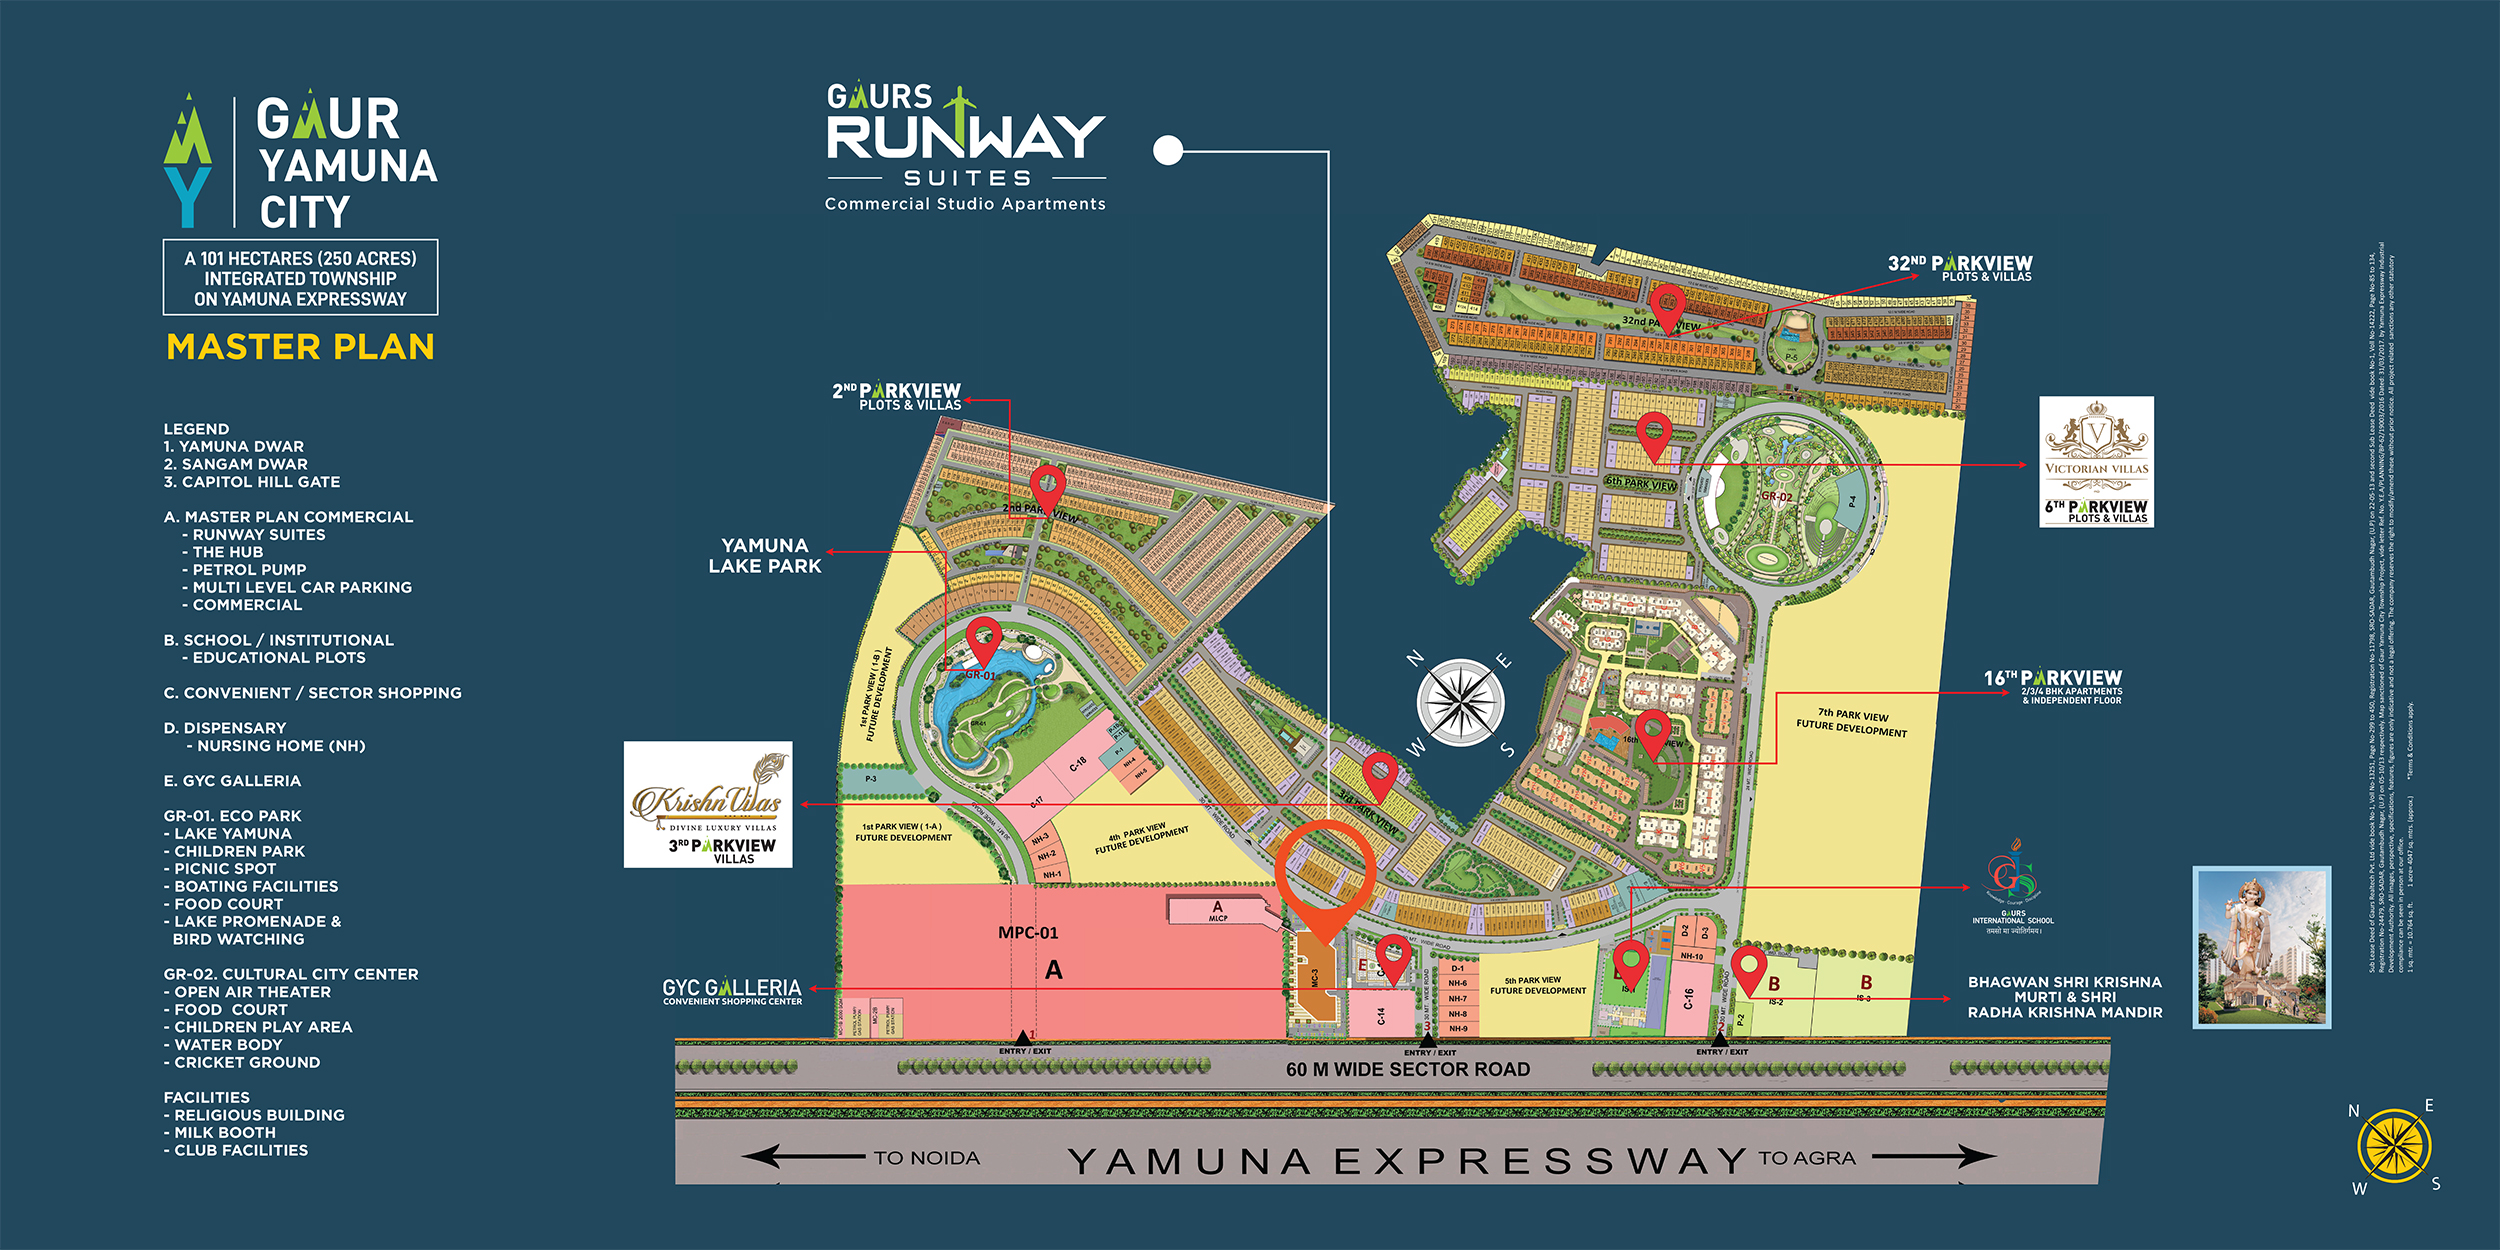 Gaur Runway Suites Site Plan